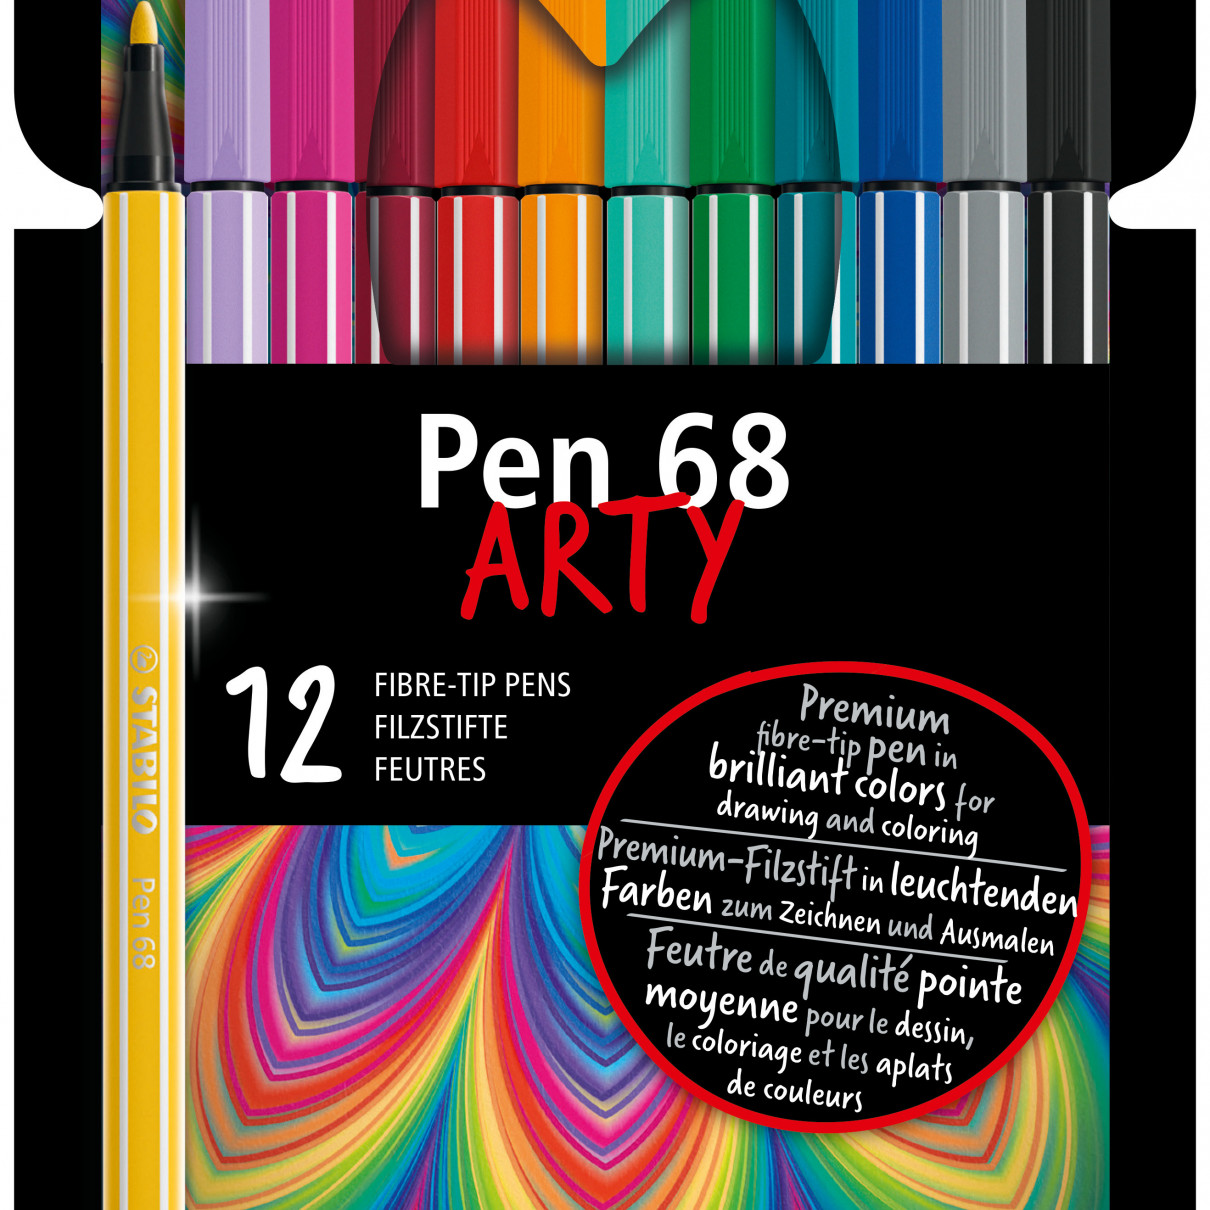 STABILO Pen 68 Brush, Set of 20